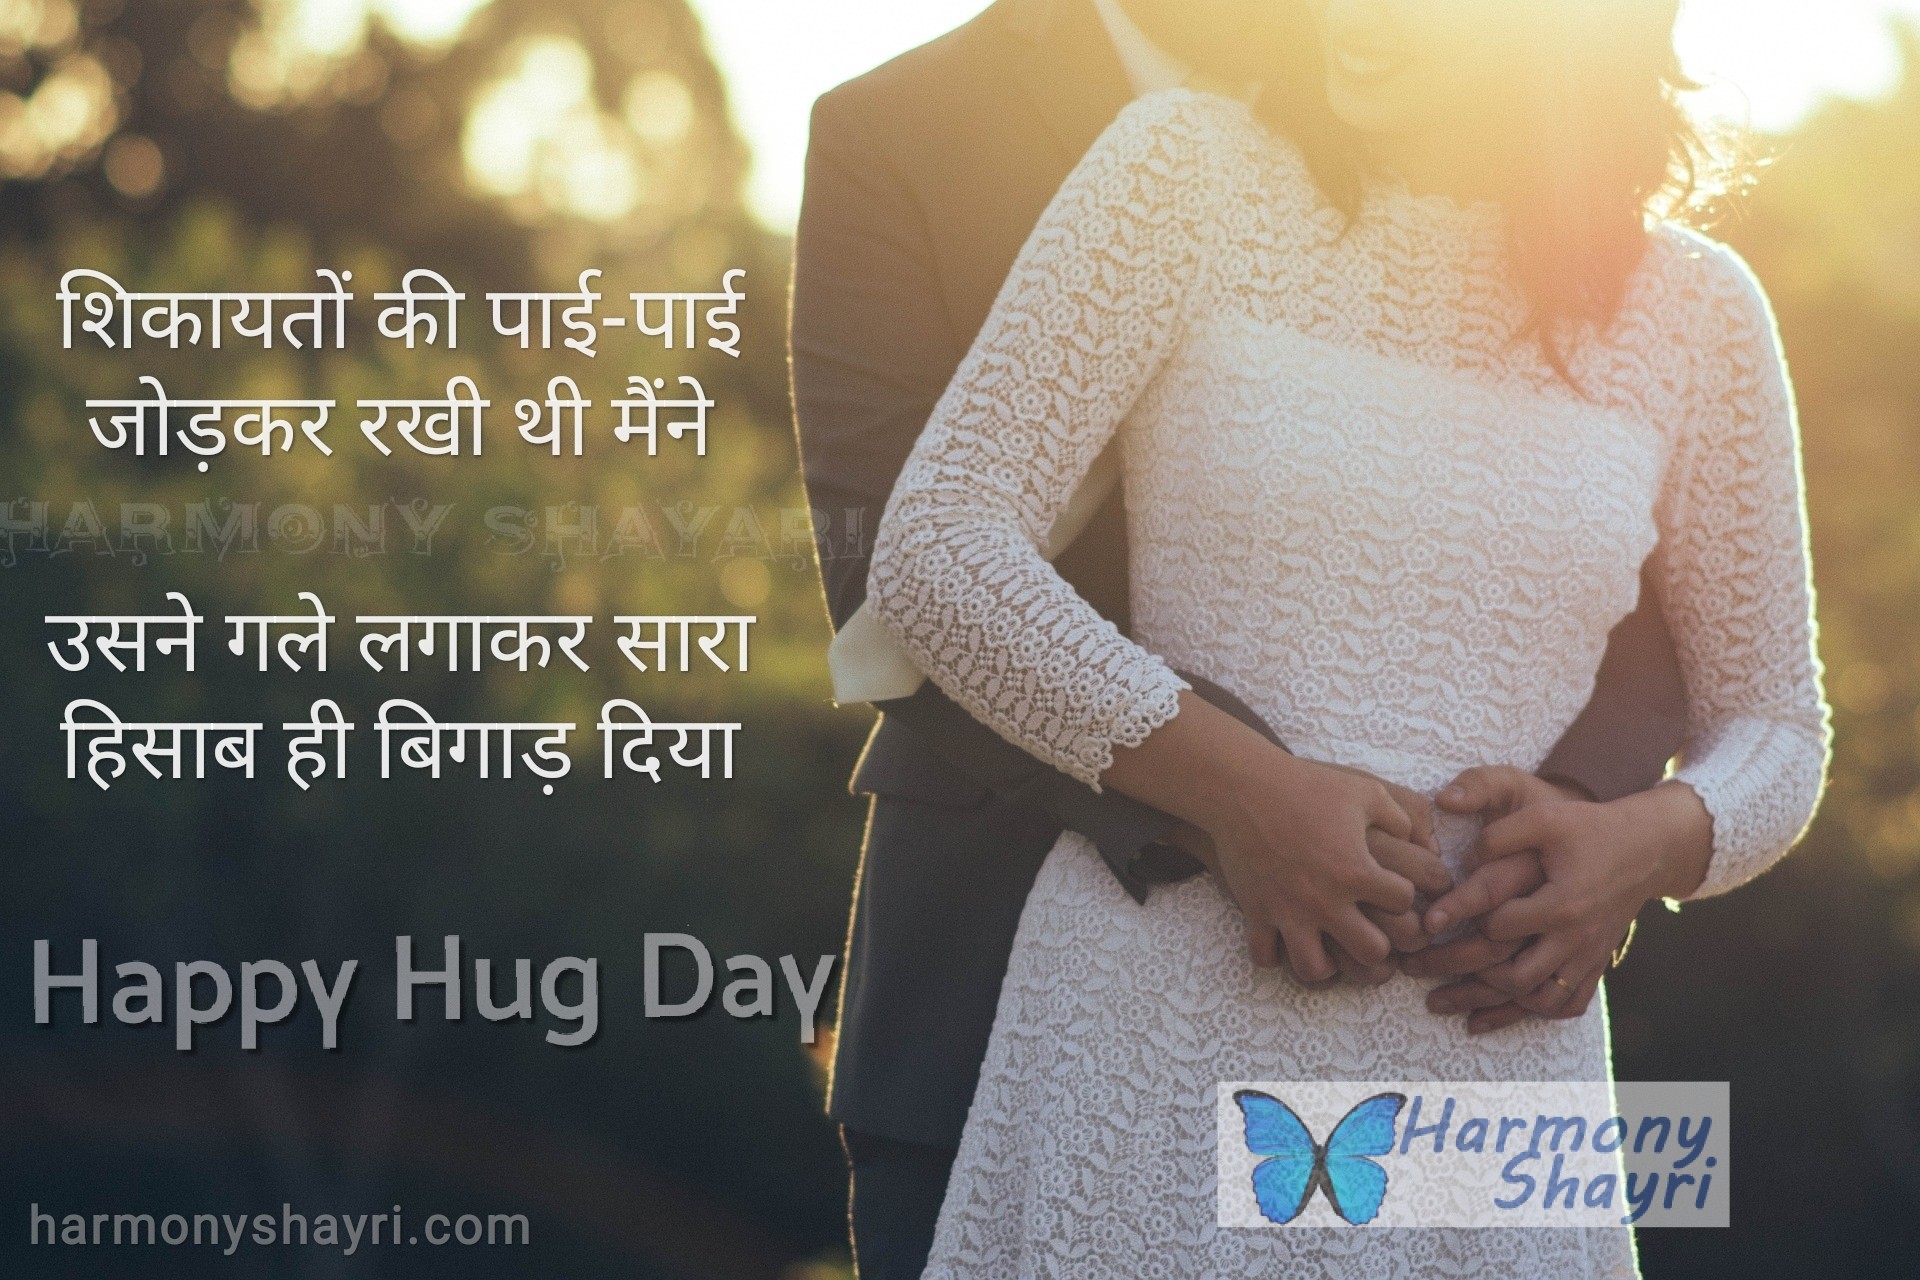 Shikaayaton ki pai-pai jodkar rakhi thi – Happy Hug Day